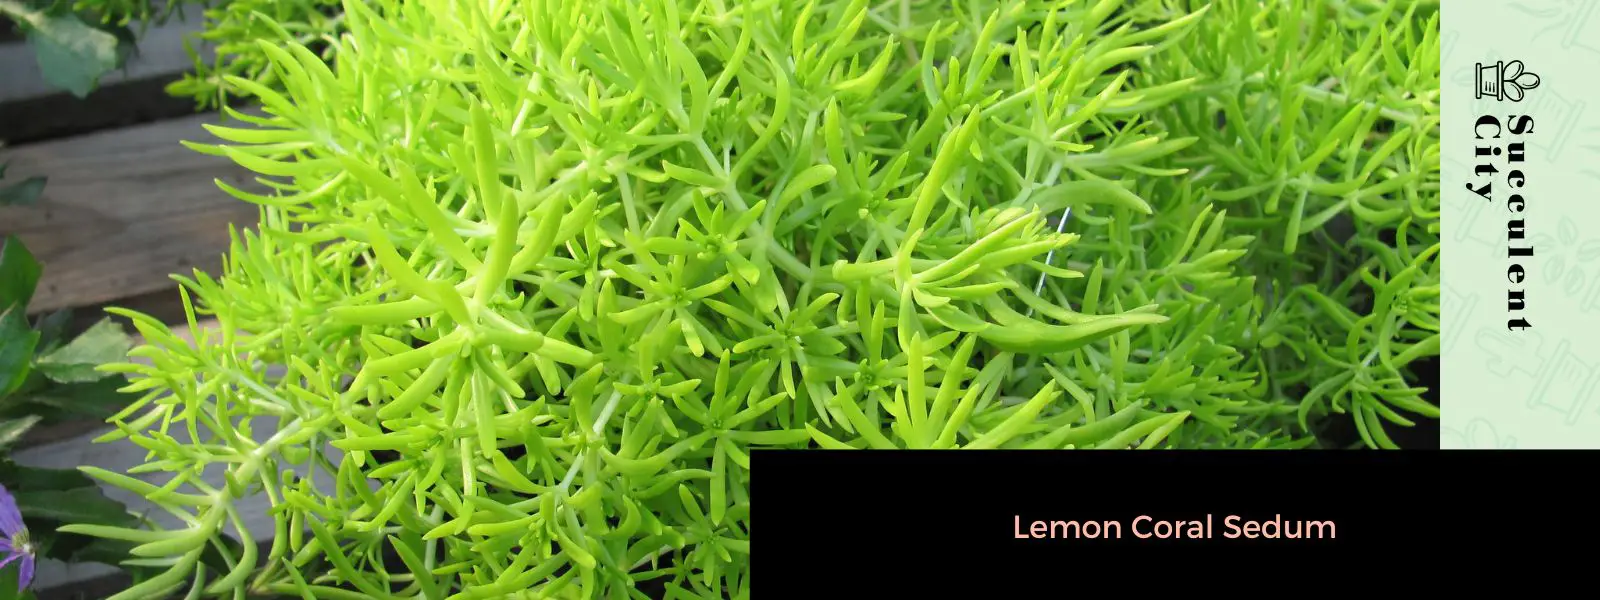 Sedum de coral limón